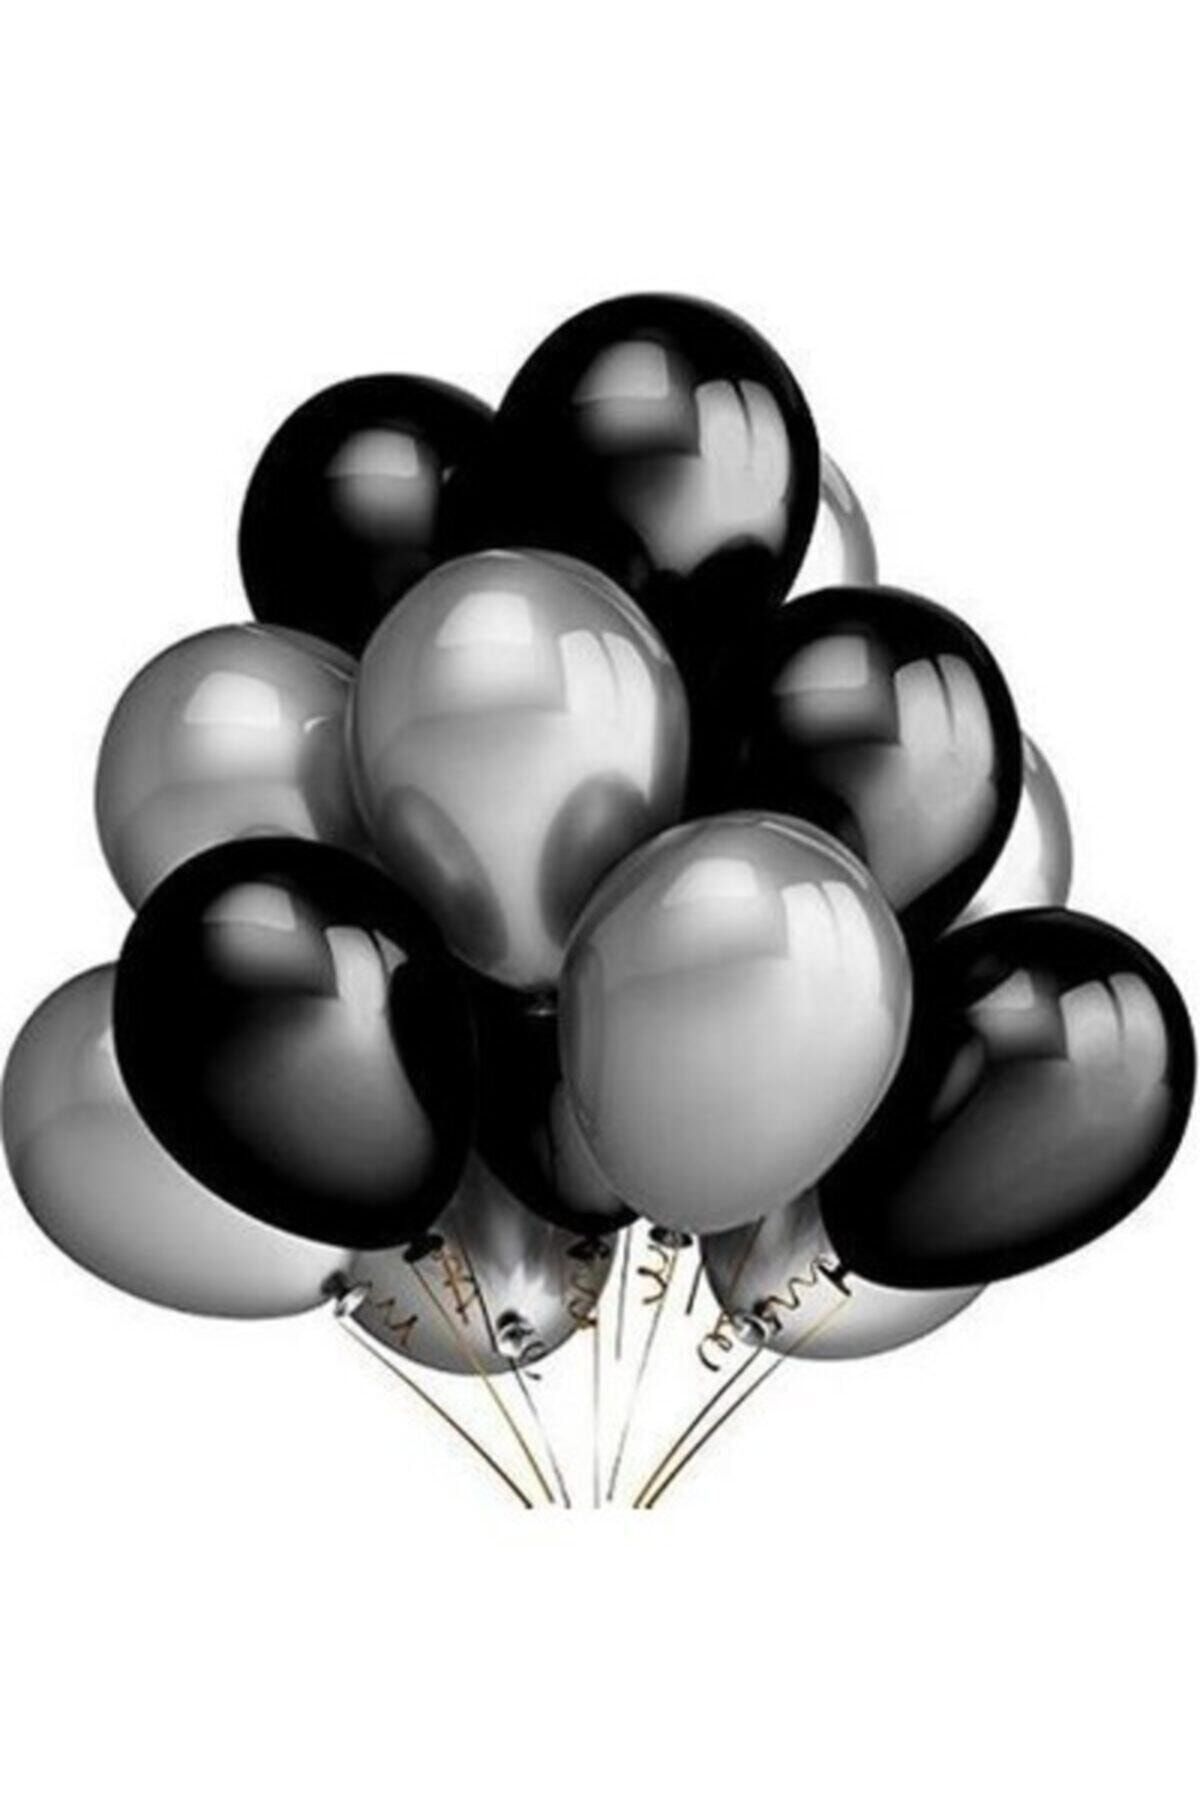 TATLI GÜNLER Partiniseç 25 Adet Metalik Sedefli (siyah-gümüş Gri) Karışık Balon Helyumla Uçan